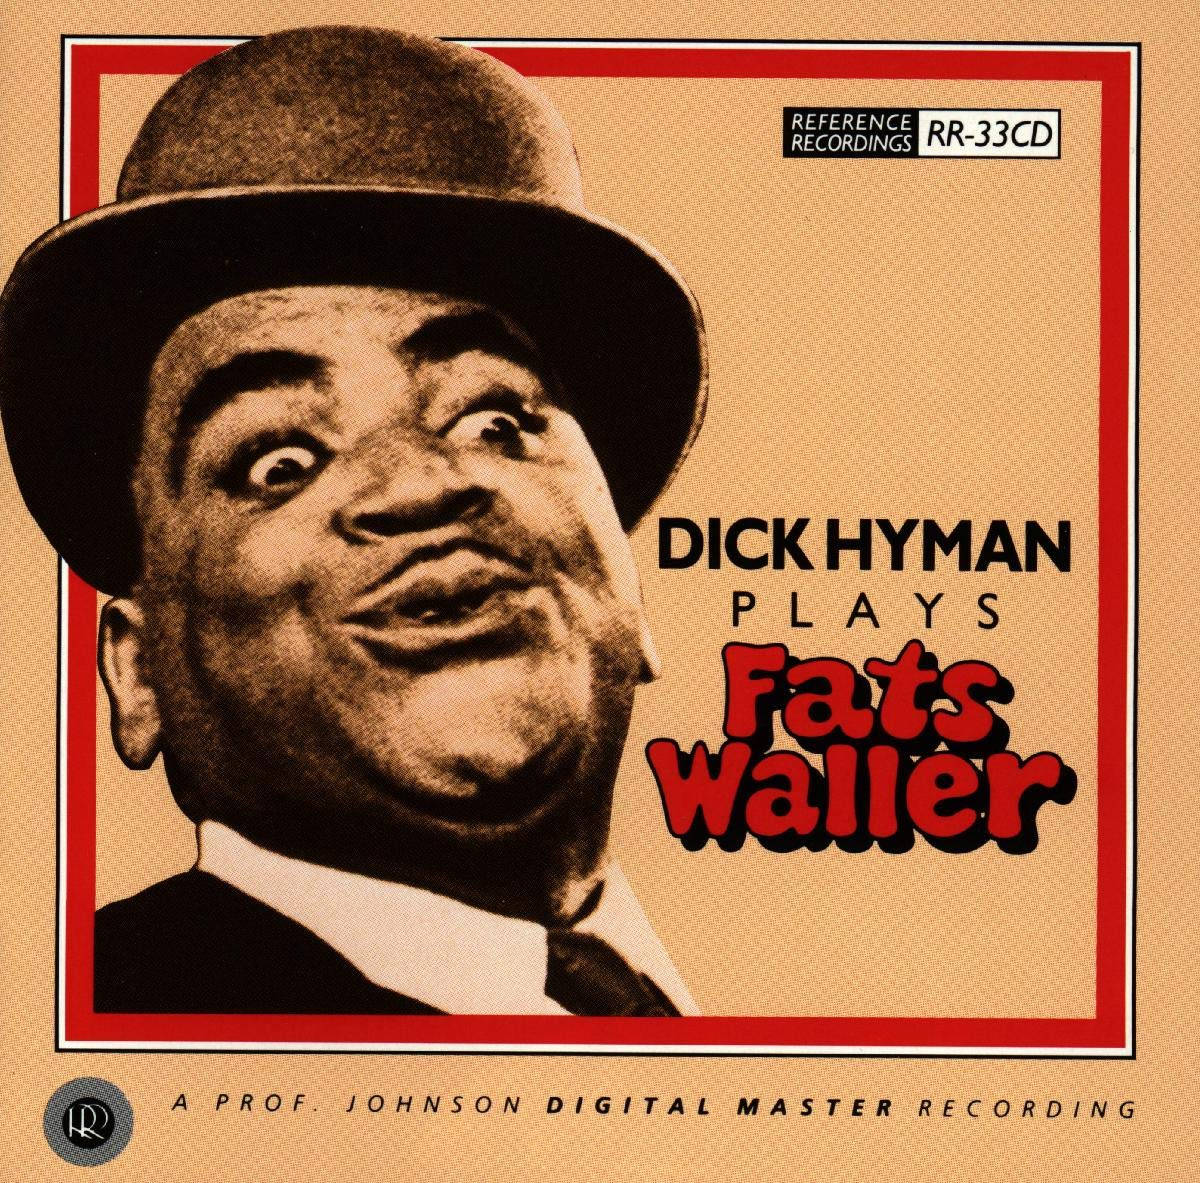 Dickhyman Spielt Das Albumcover Von Fats Waller. Wallpaper